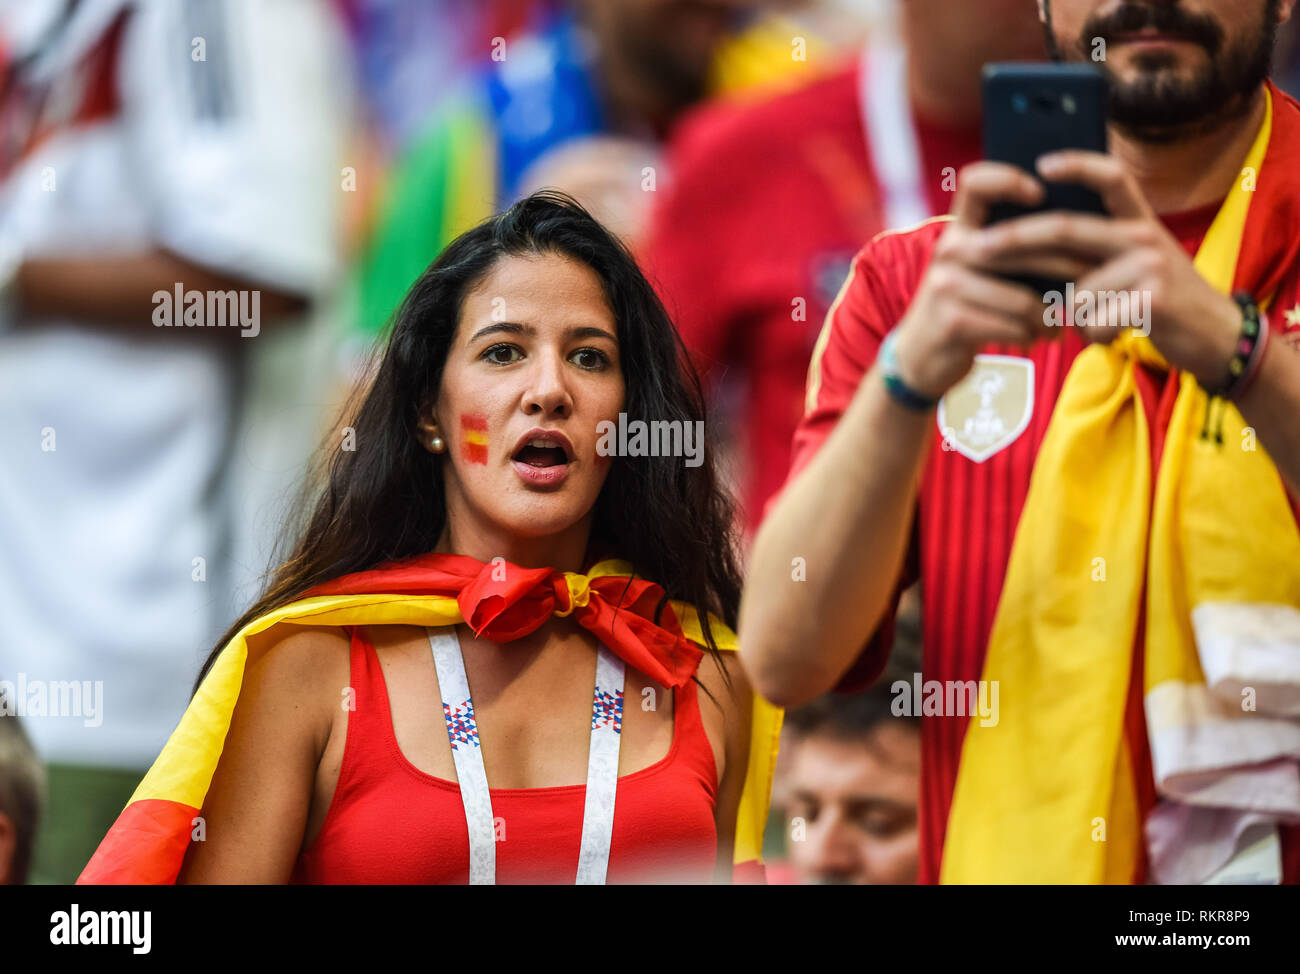 Moscú, Rusia - 1 de julio de 2018. Español chica del ventilador durante la Copa Mundial de la FIFA 2018, partido de octavos de final España vs Rusia. Foto de stock